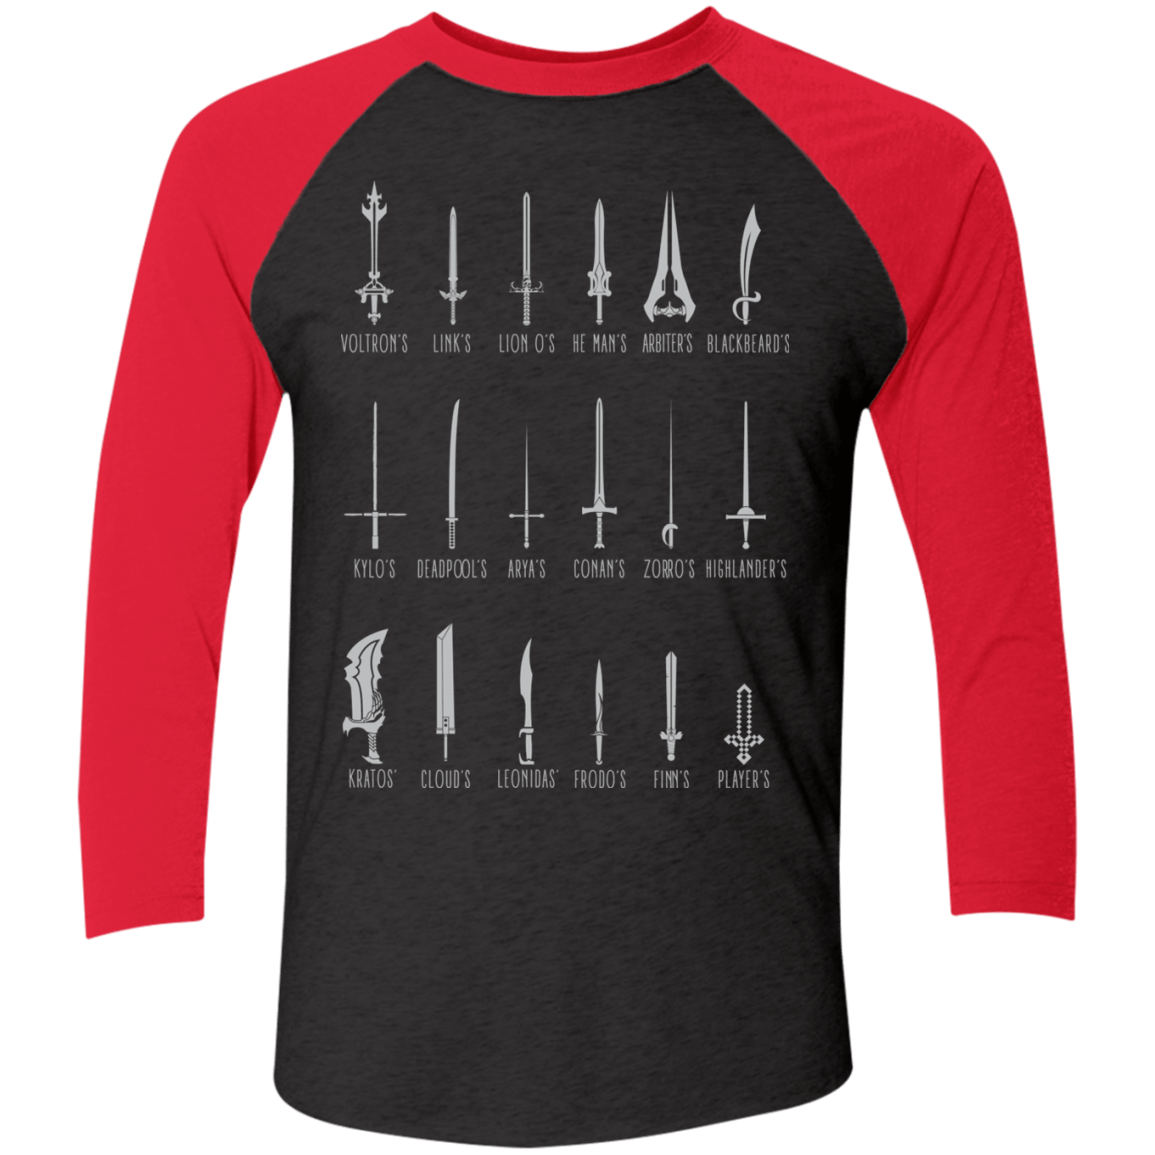 T-Shirts Vintage Black/Vintage Red / X-Small POPULAR SWORDS Men's Triblend 3/4 Sleeve